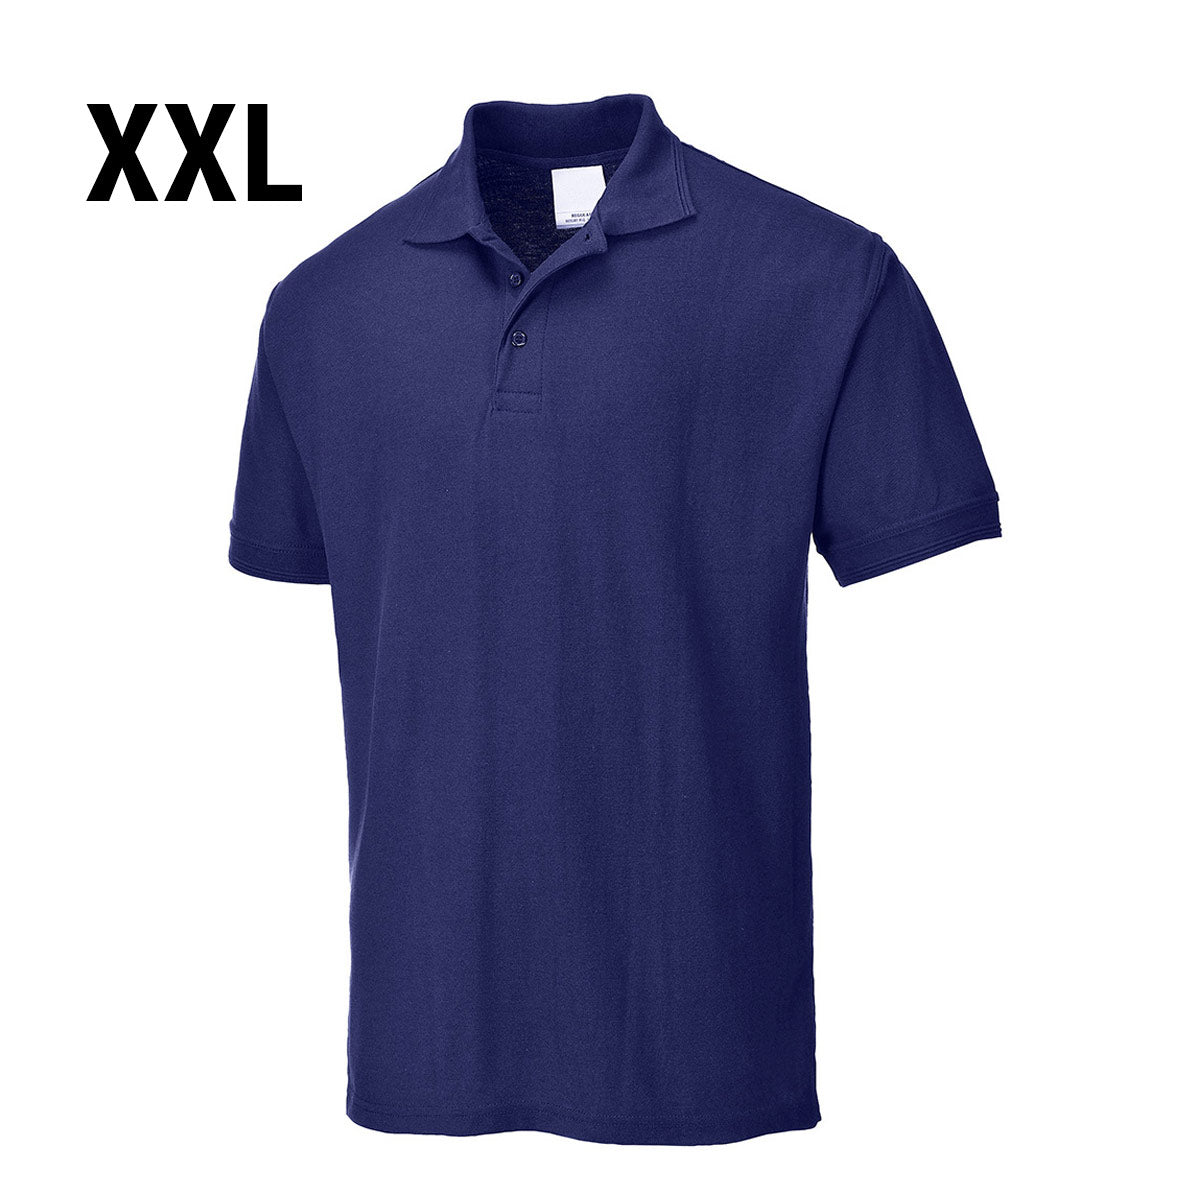 Polo shirt til mænd - Navy - Størrelse: XXL